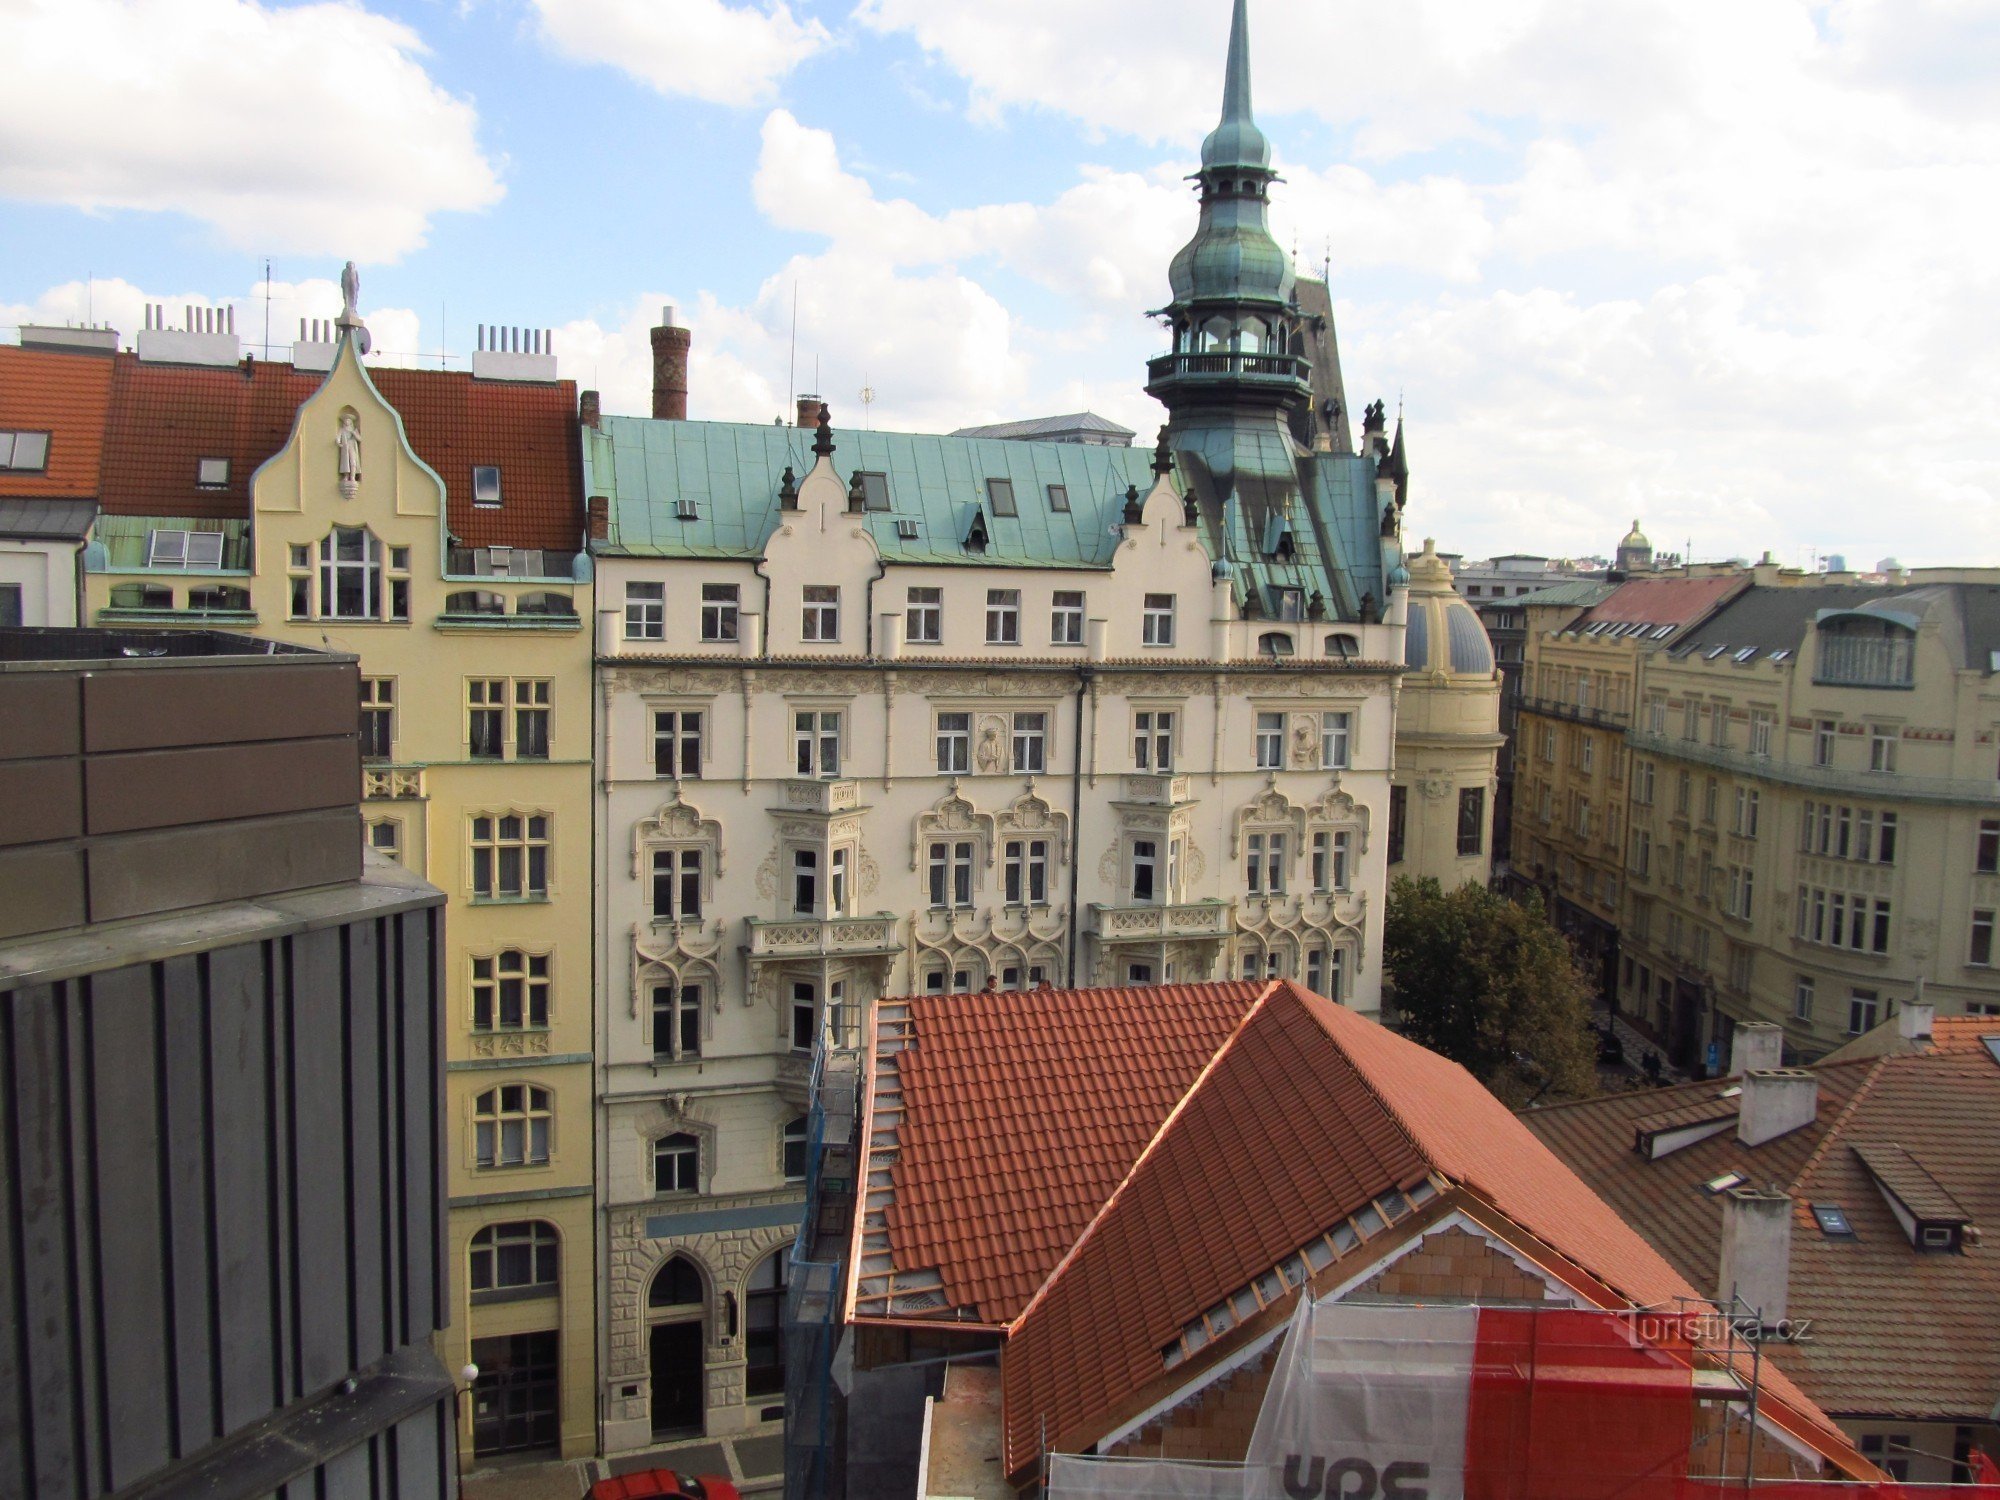 Widok z tarasu restauracji na ostatnim piętrze domu towarowego Kotva w Pradze